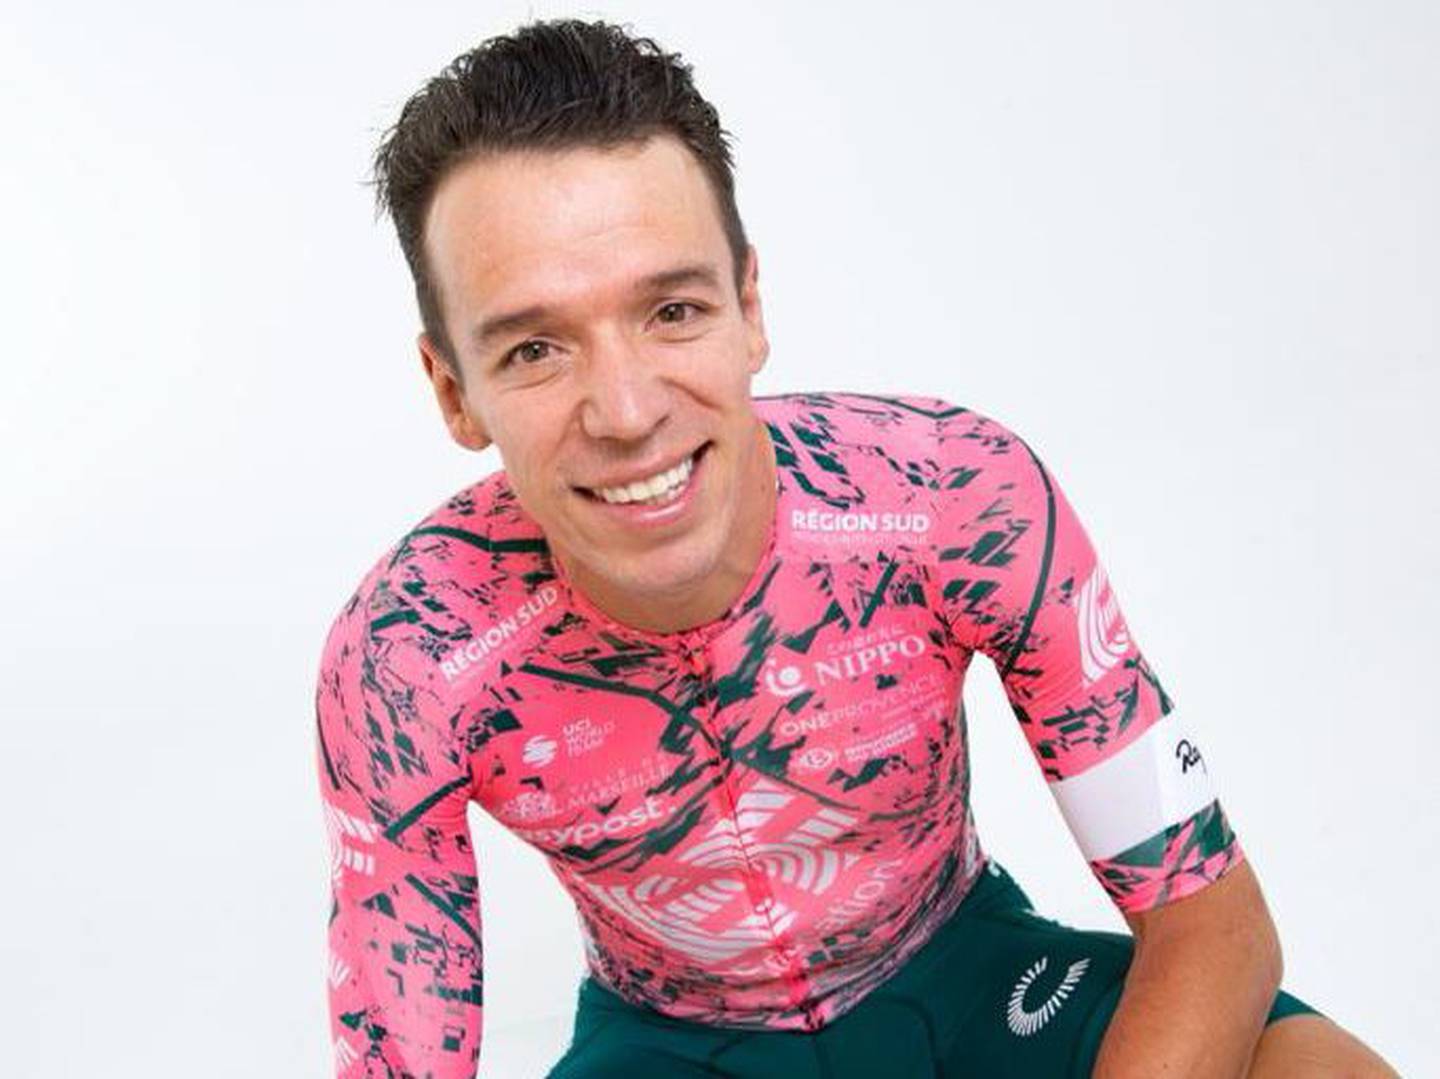 El ciclista colombiano Rigoberto Urán.dfd